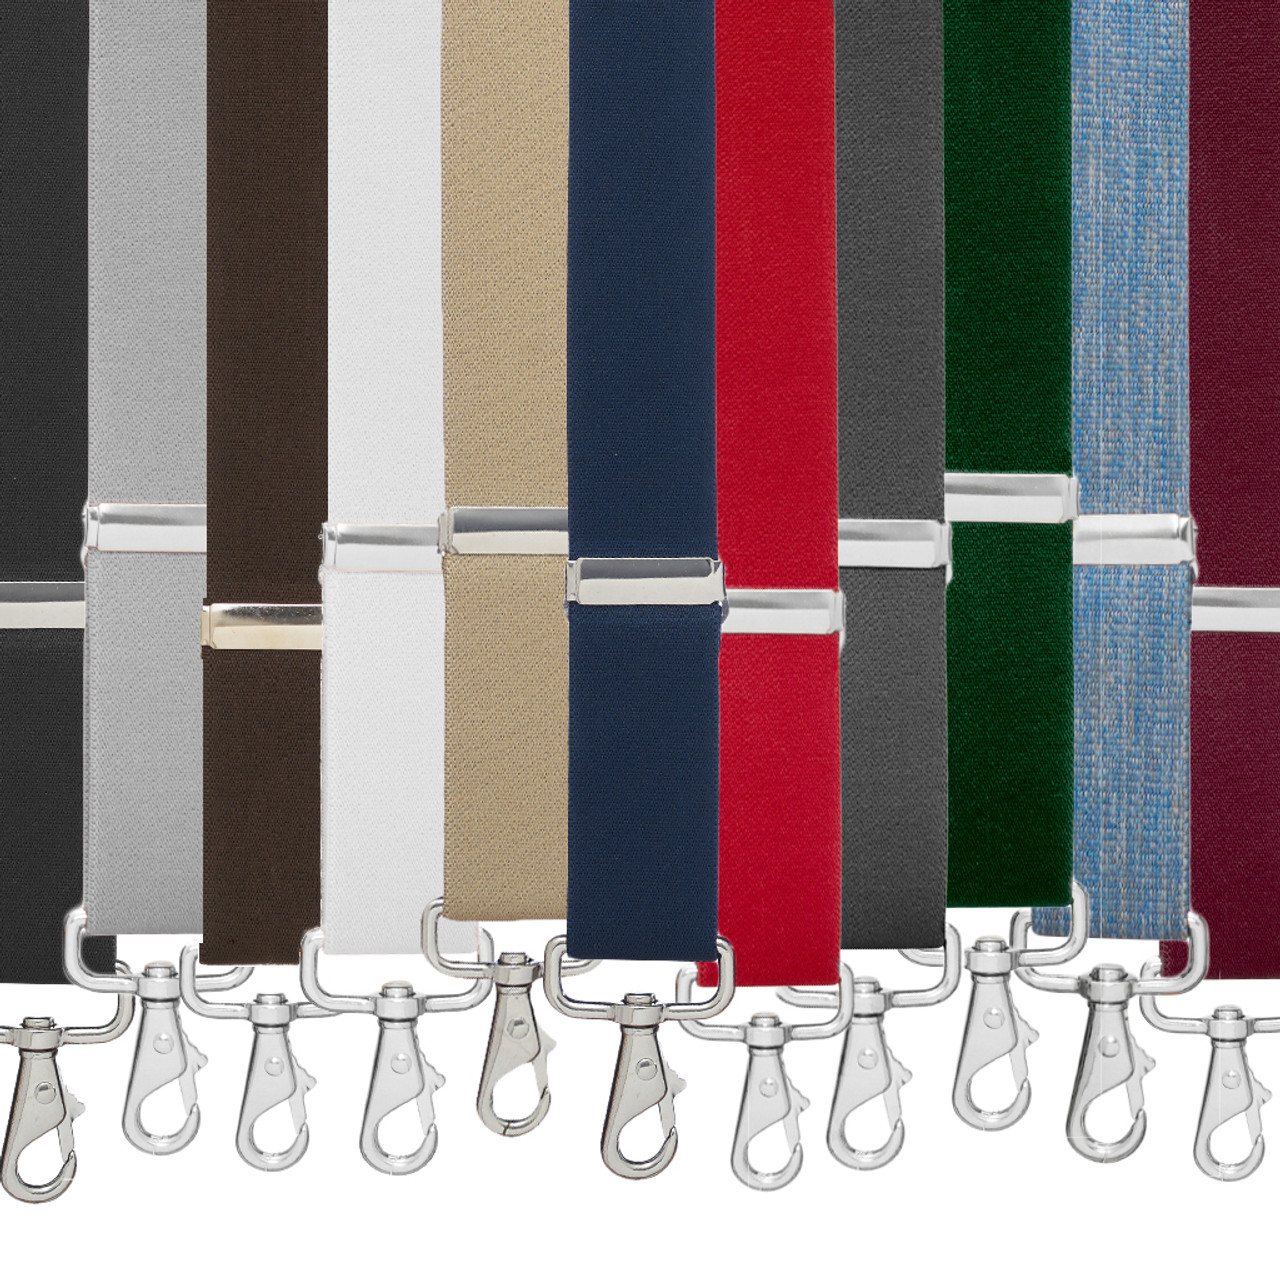 Y-Back Snap Suspenders (Nickle) - Logger Suspenders